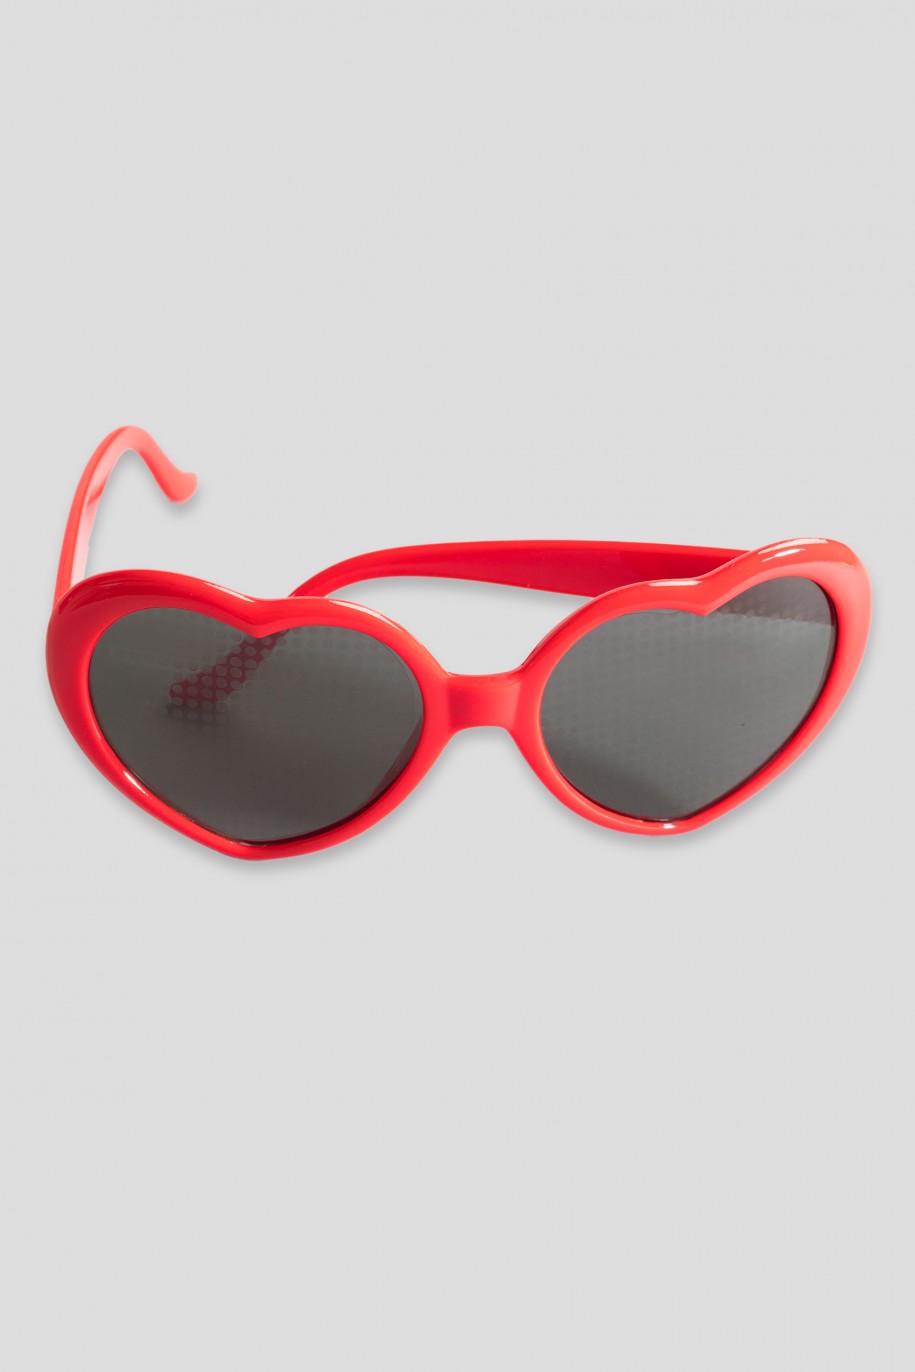 czerwone okulary przeciwsłoneczne dla dziewczyny reporter young